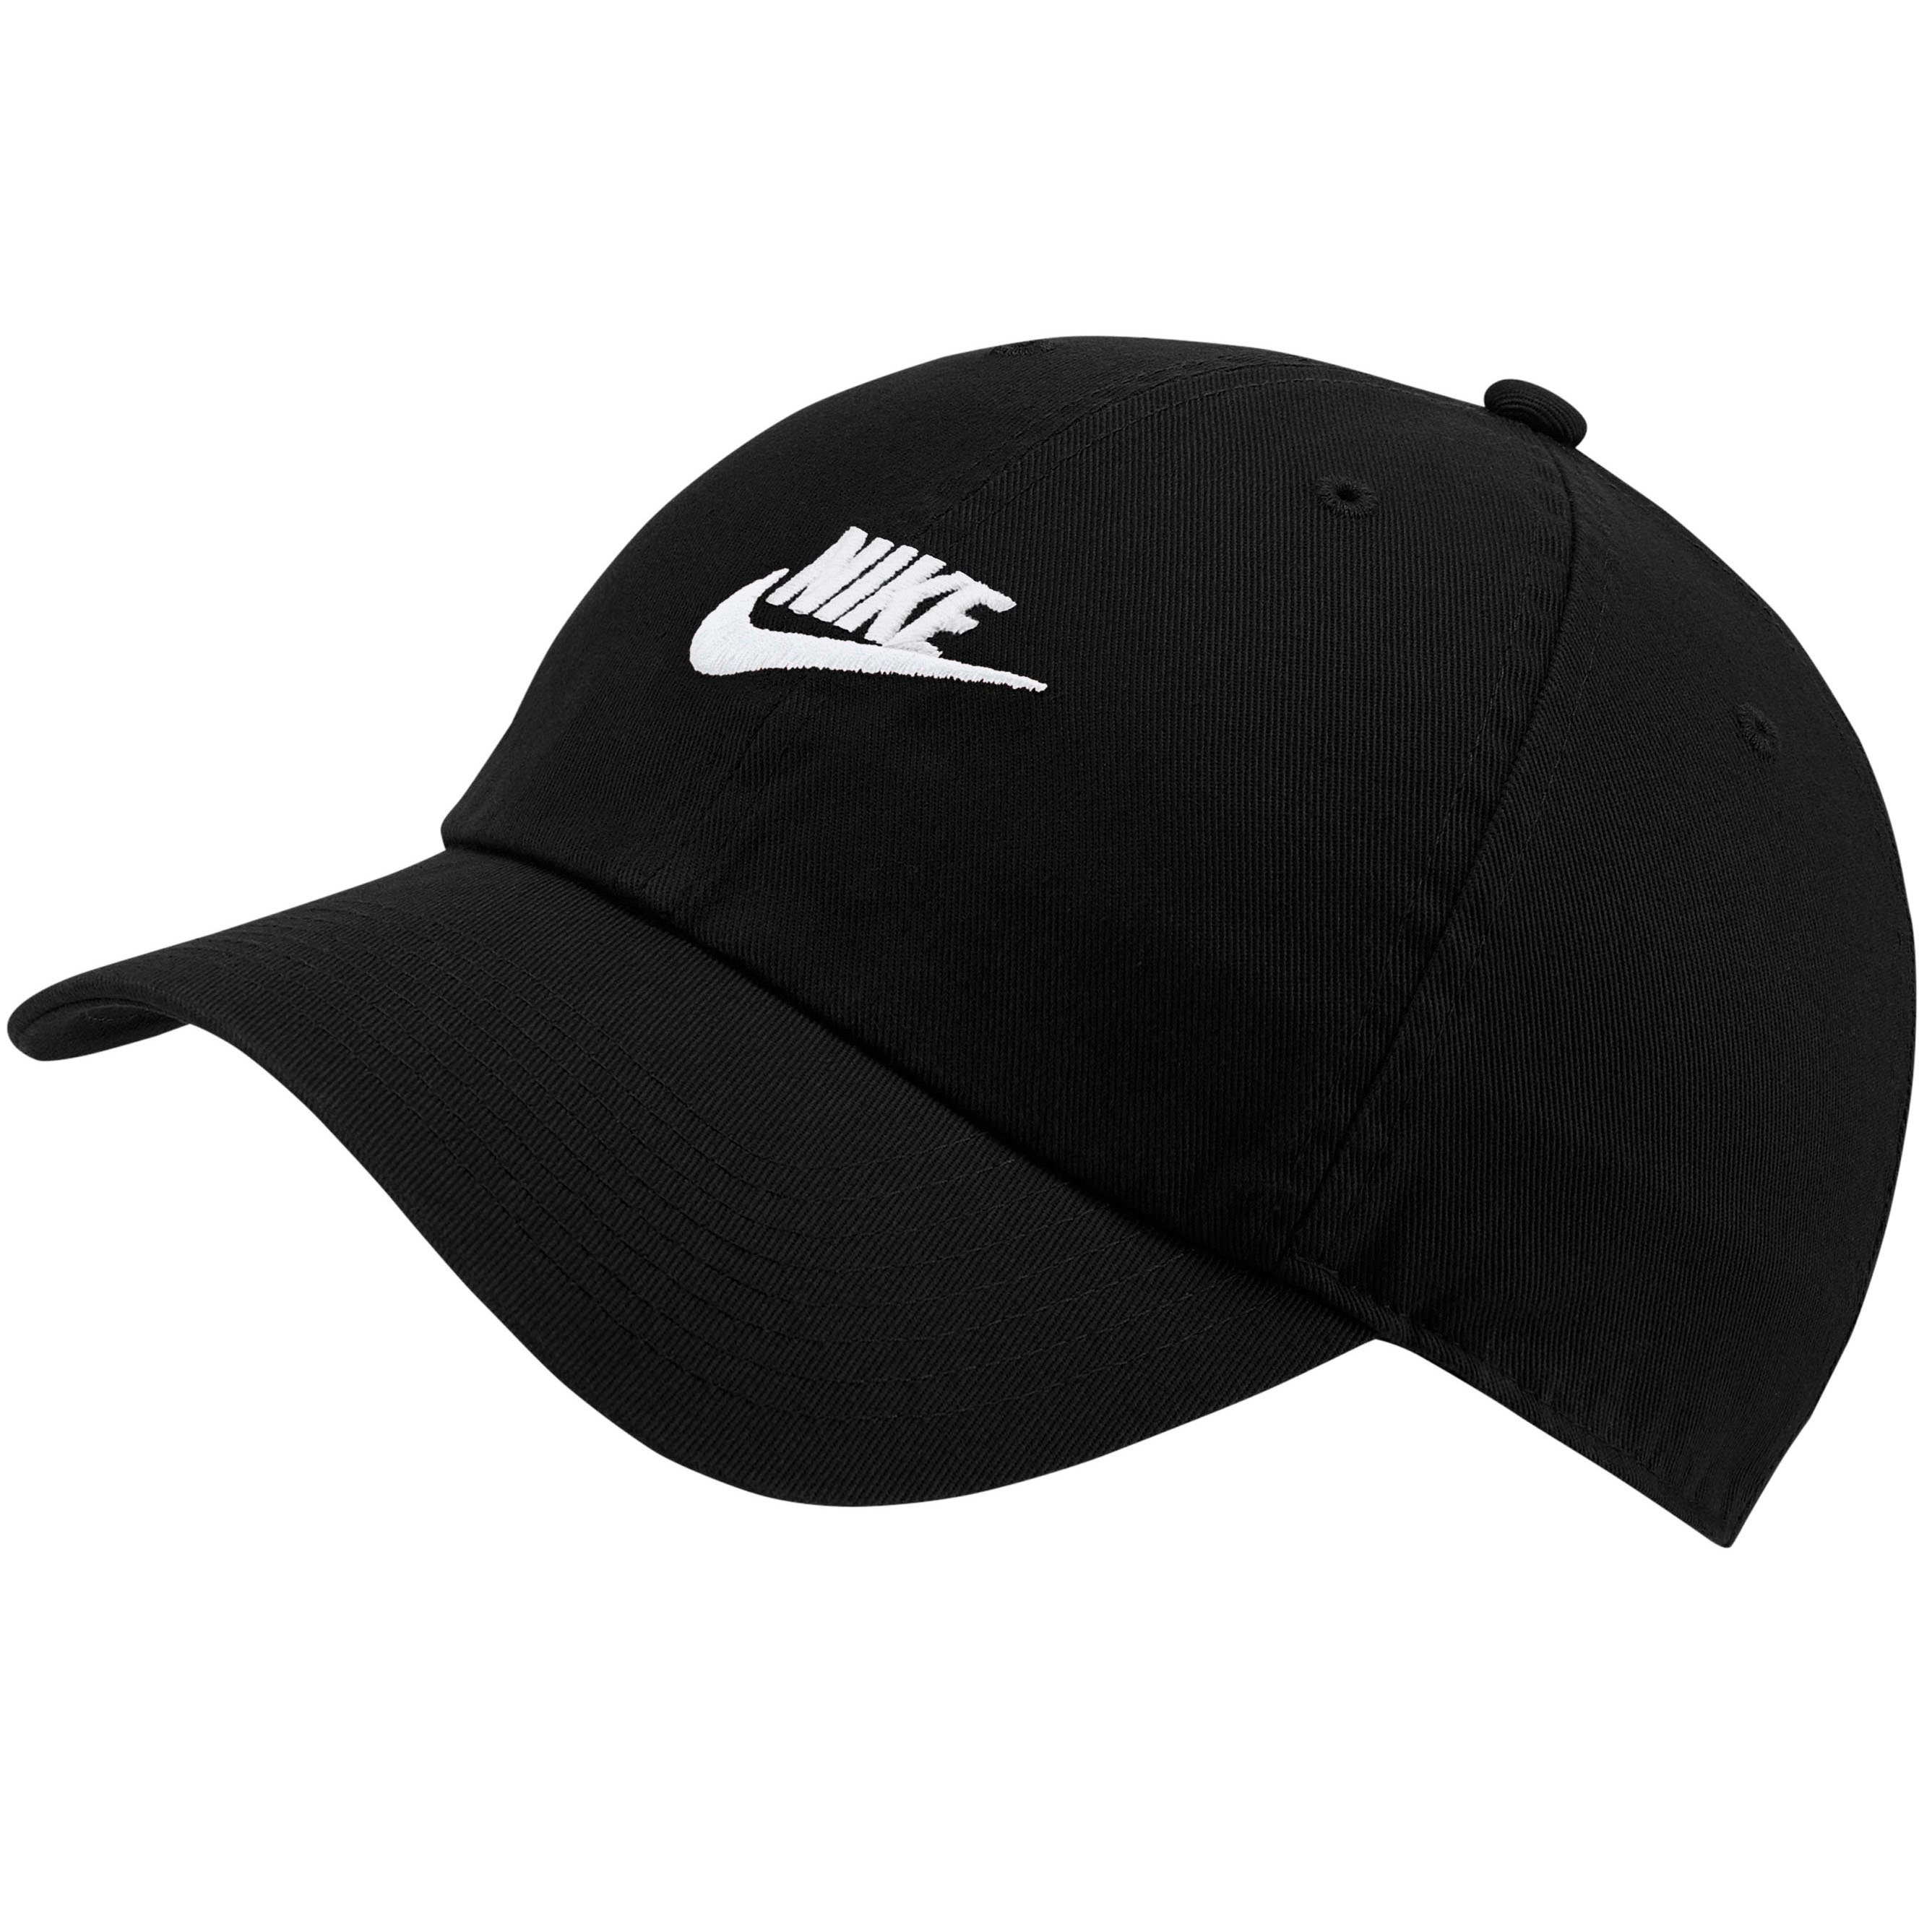 Nike Damen Caps kaufen » Kappen OTTO